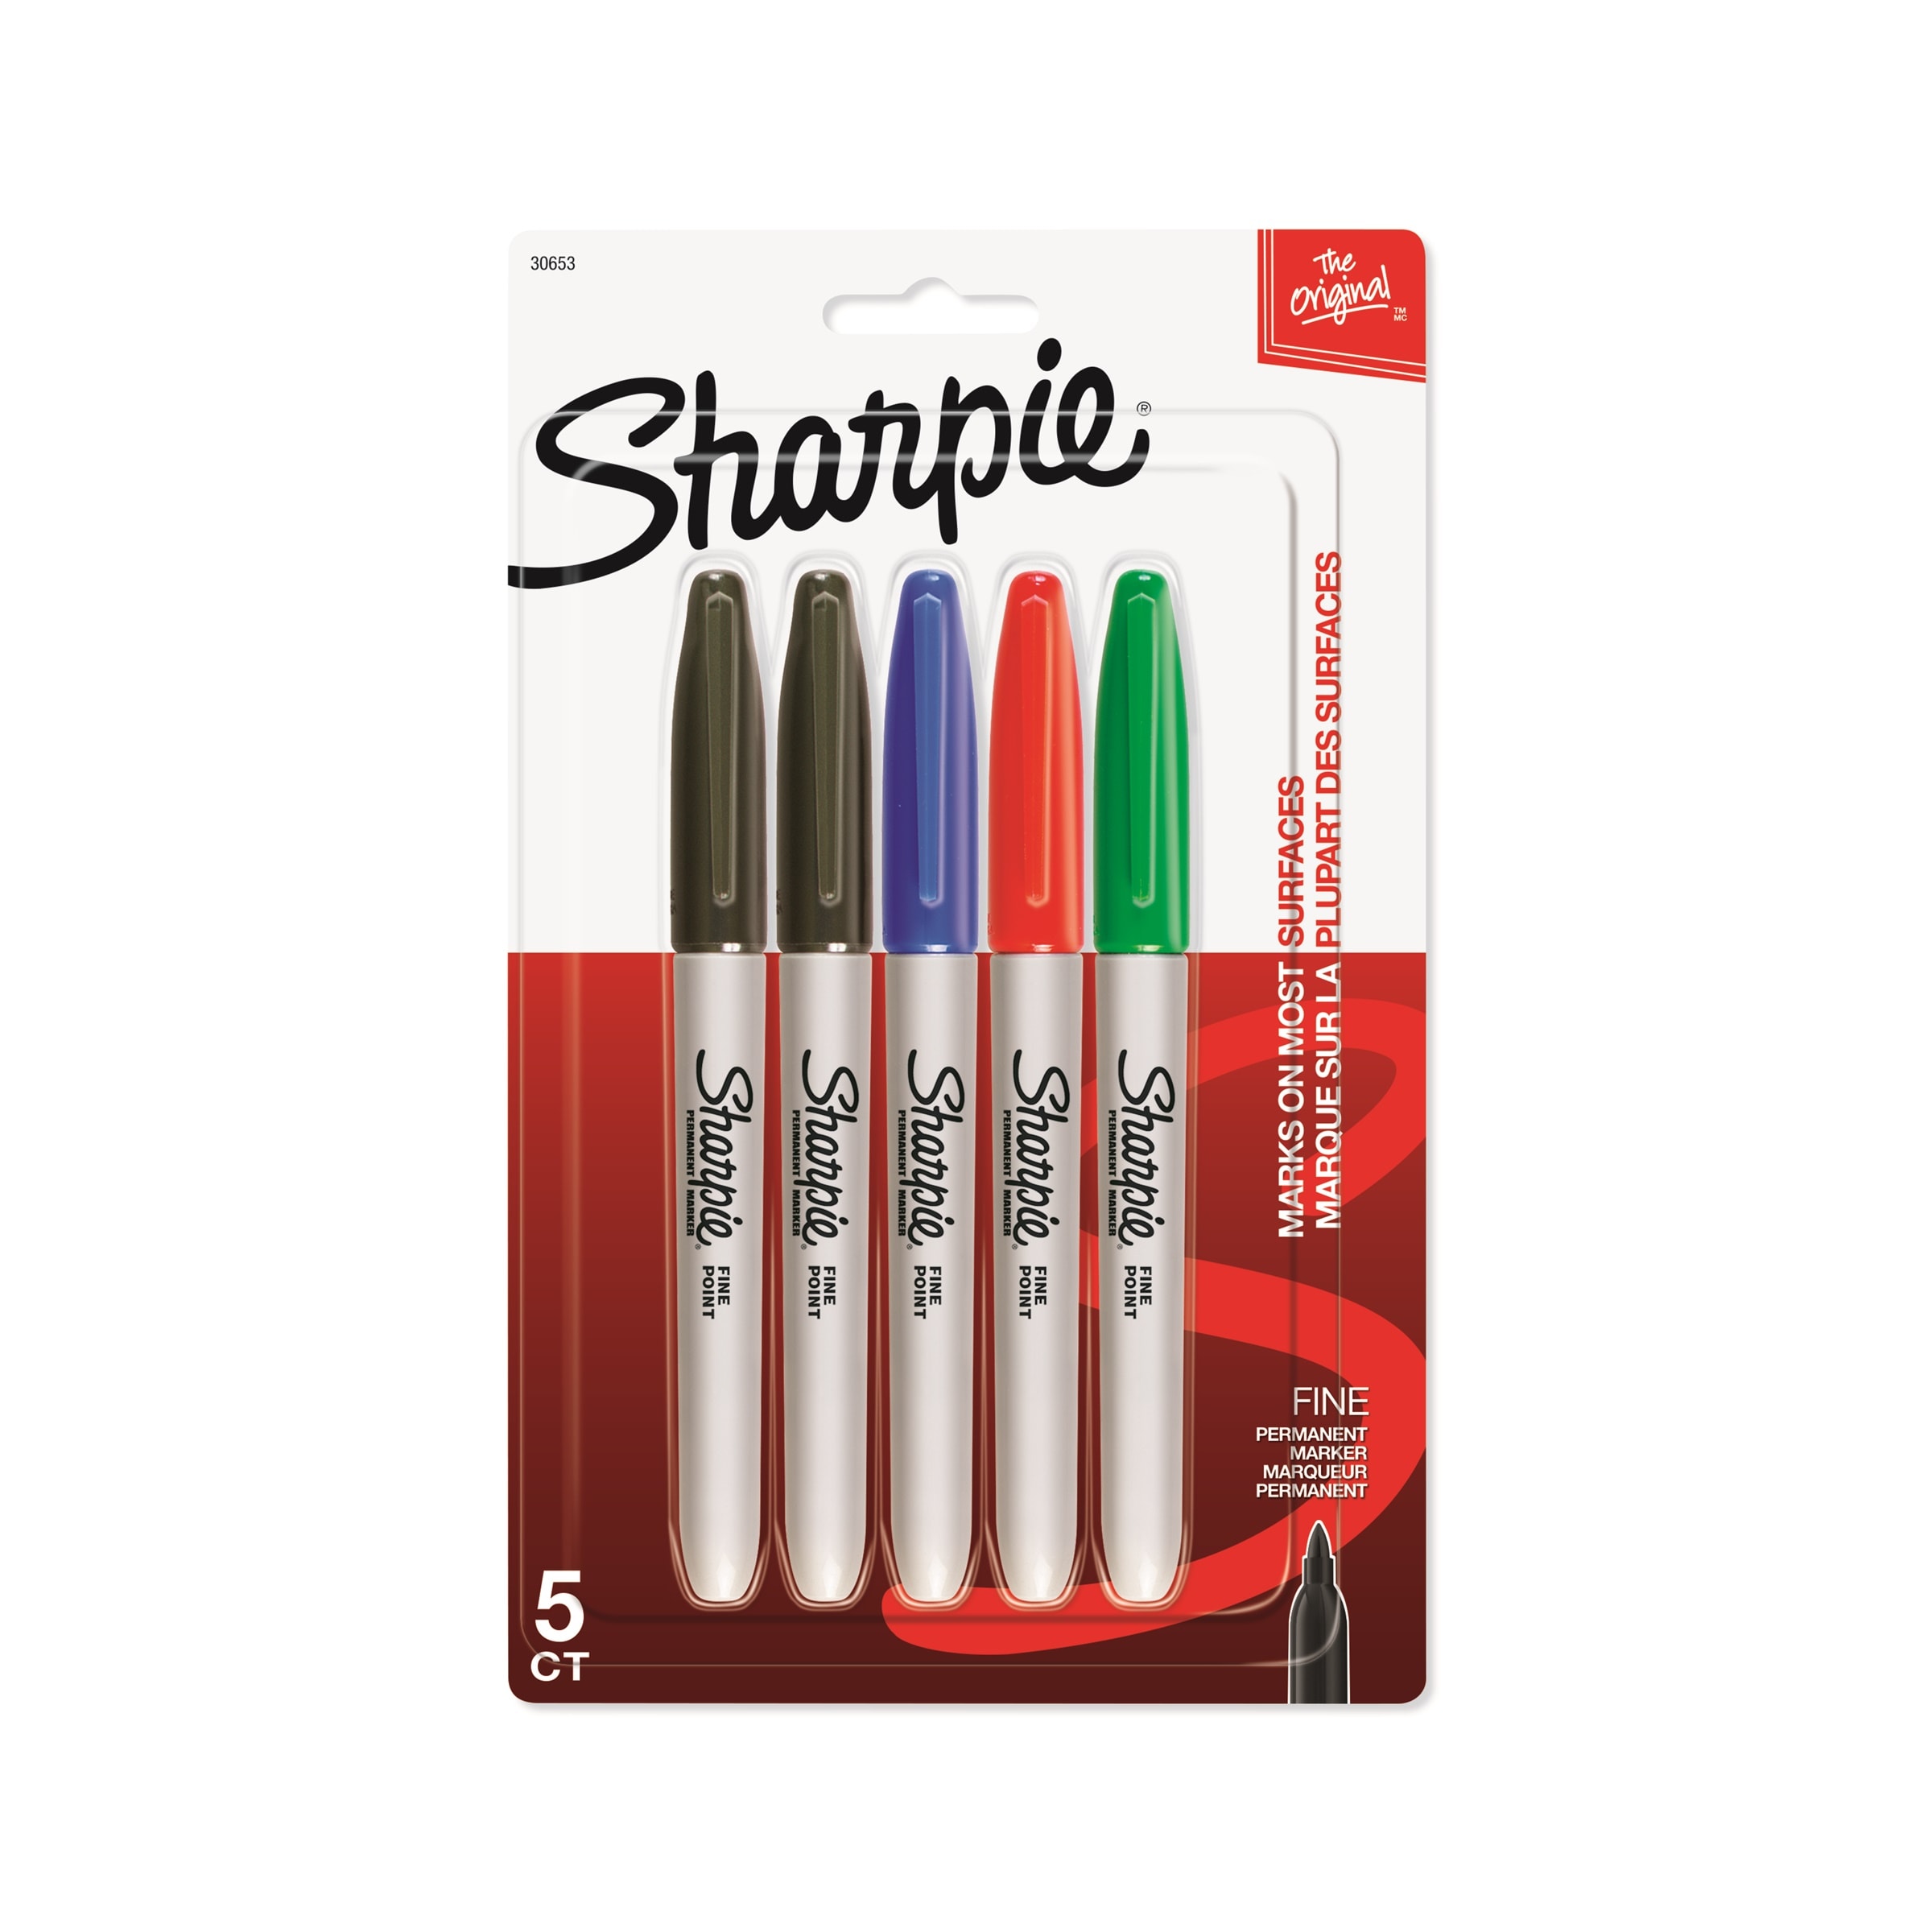 Sharpie Metallic (2 pack)